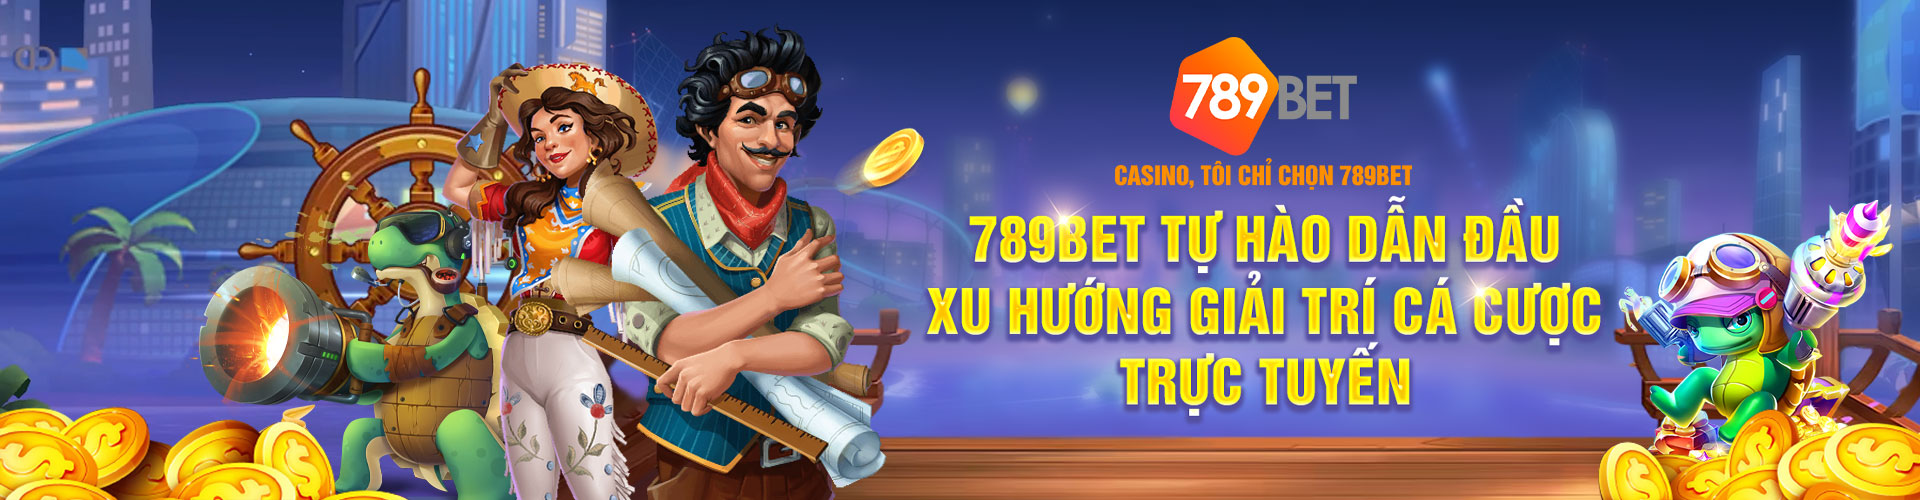 Tìm hiểu về 789bet uy tín - Nhà cái đáng tin cậy cho người chơi Việt